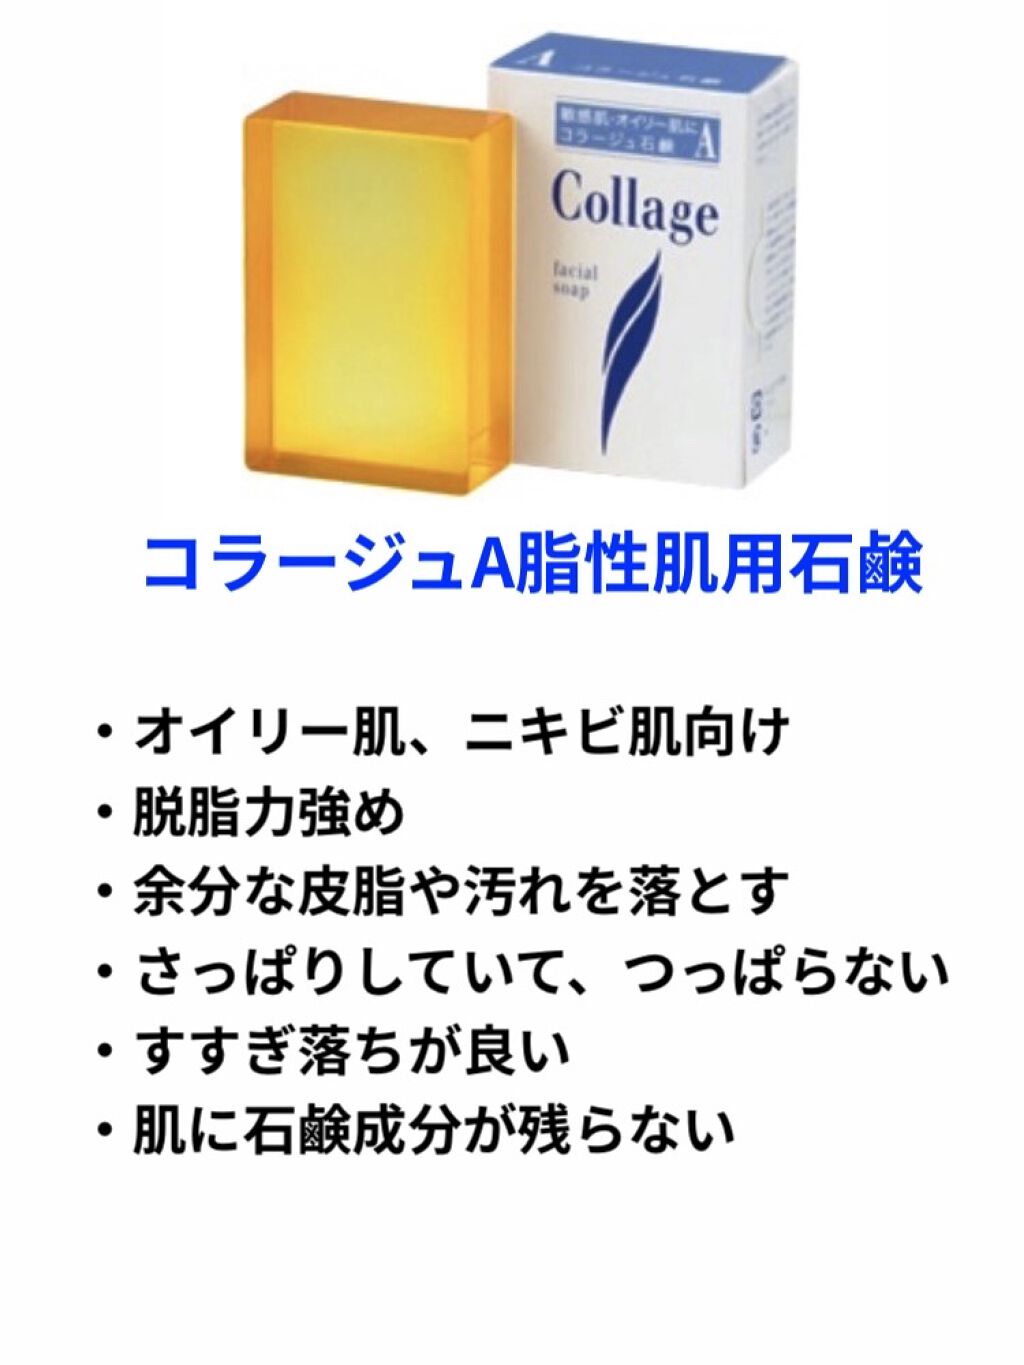 コラージュD乾性肌用石鹸 100g  持田ヘルスケア コラ-ジユセツケンD